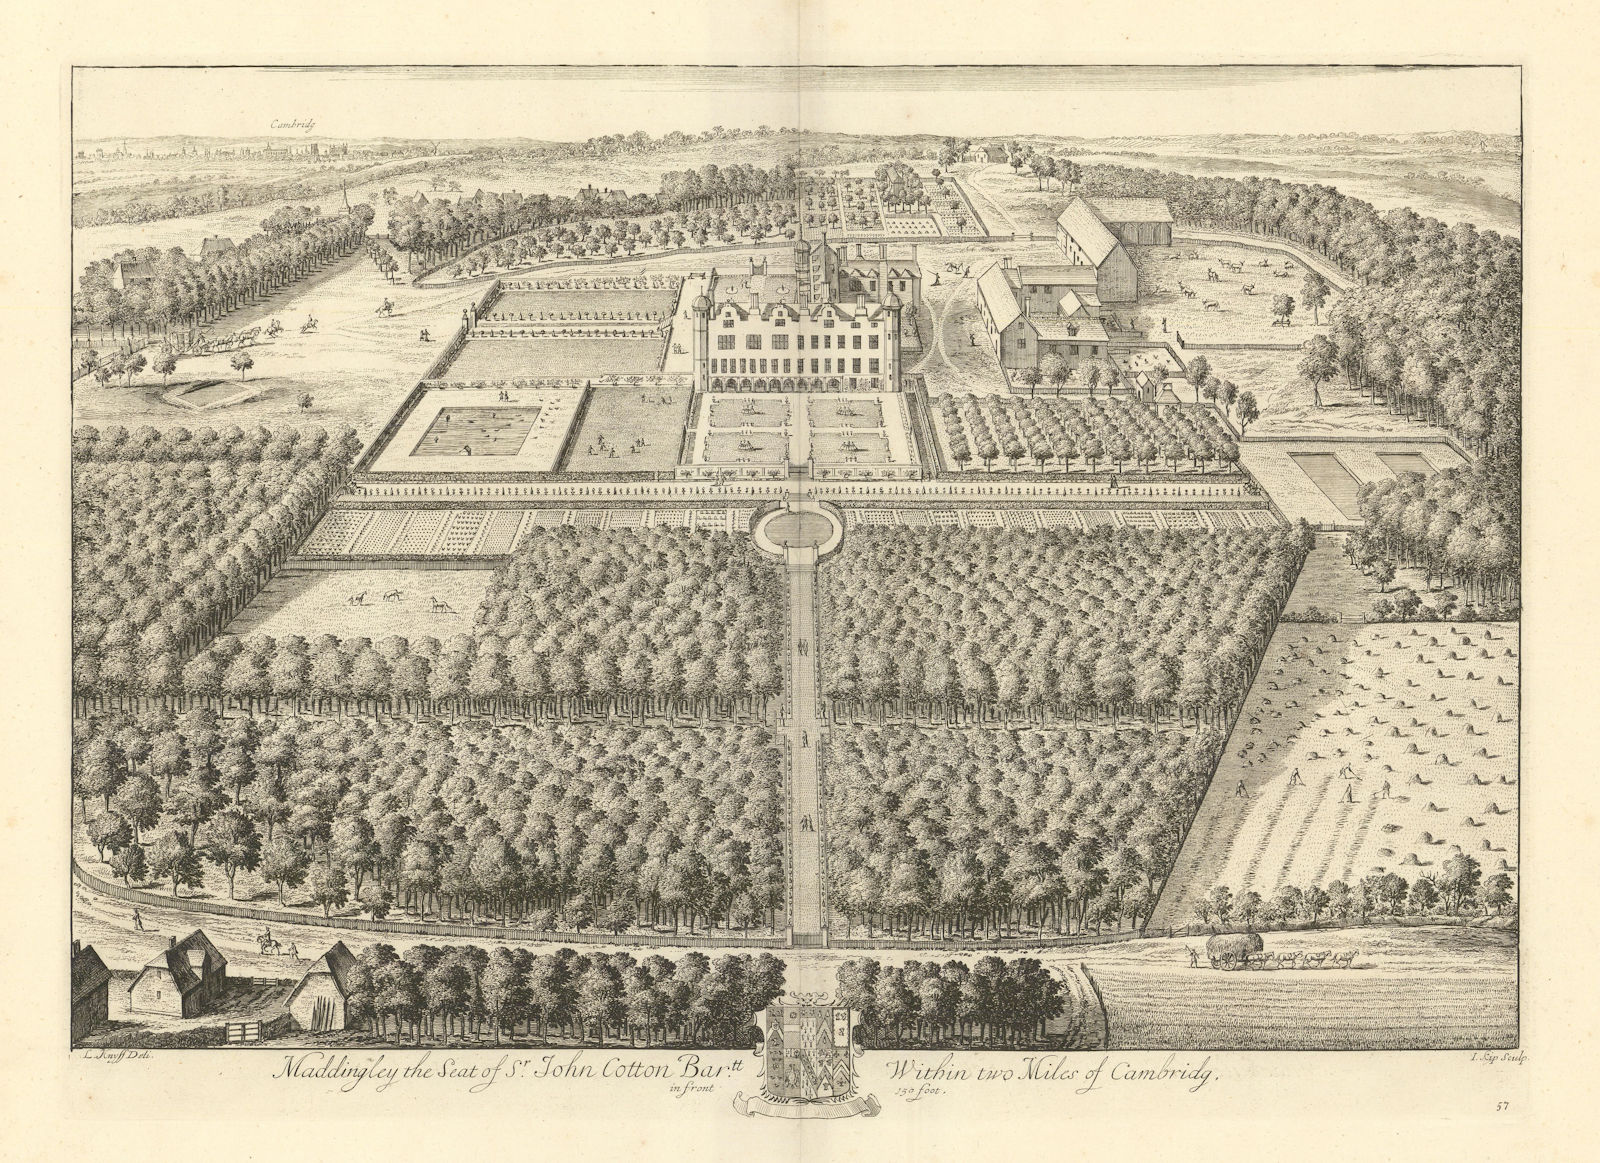 Madingley Hall, University of Cambridge by Kip & Knyff. "Maddingley" 1709